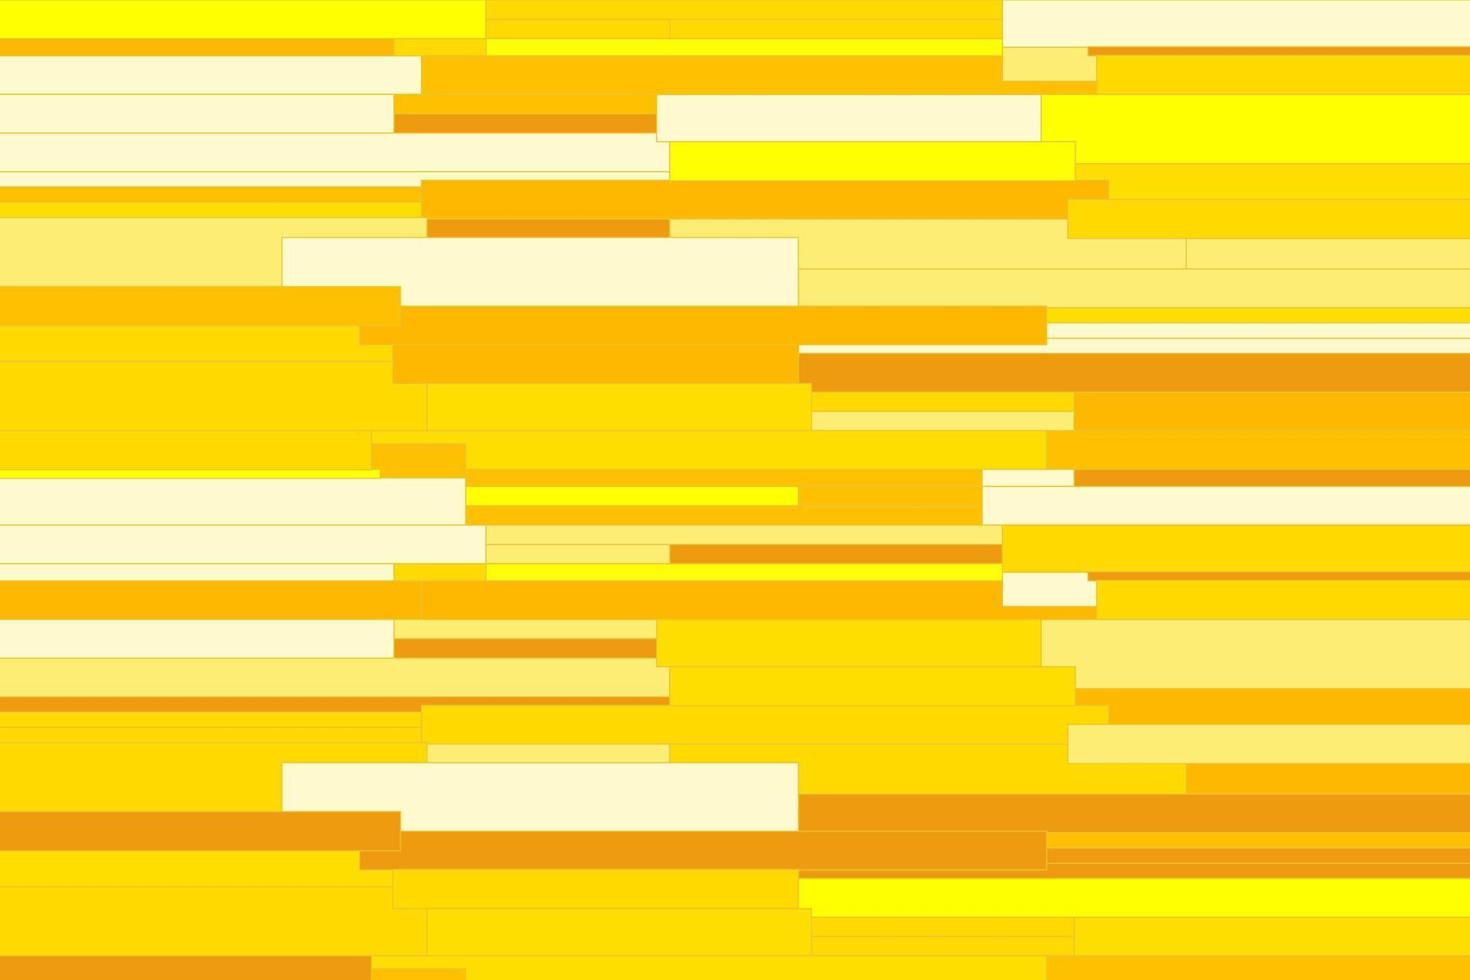 patroon met meetkundig elementen in geel tonen. abstract helling achtergrond vector